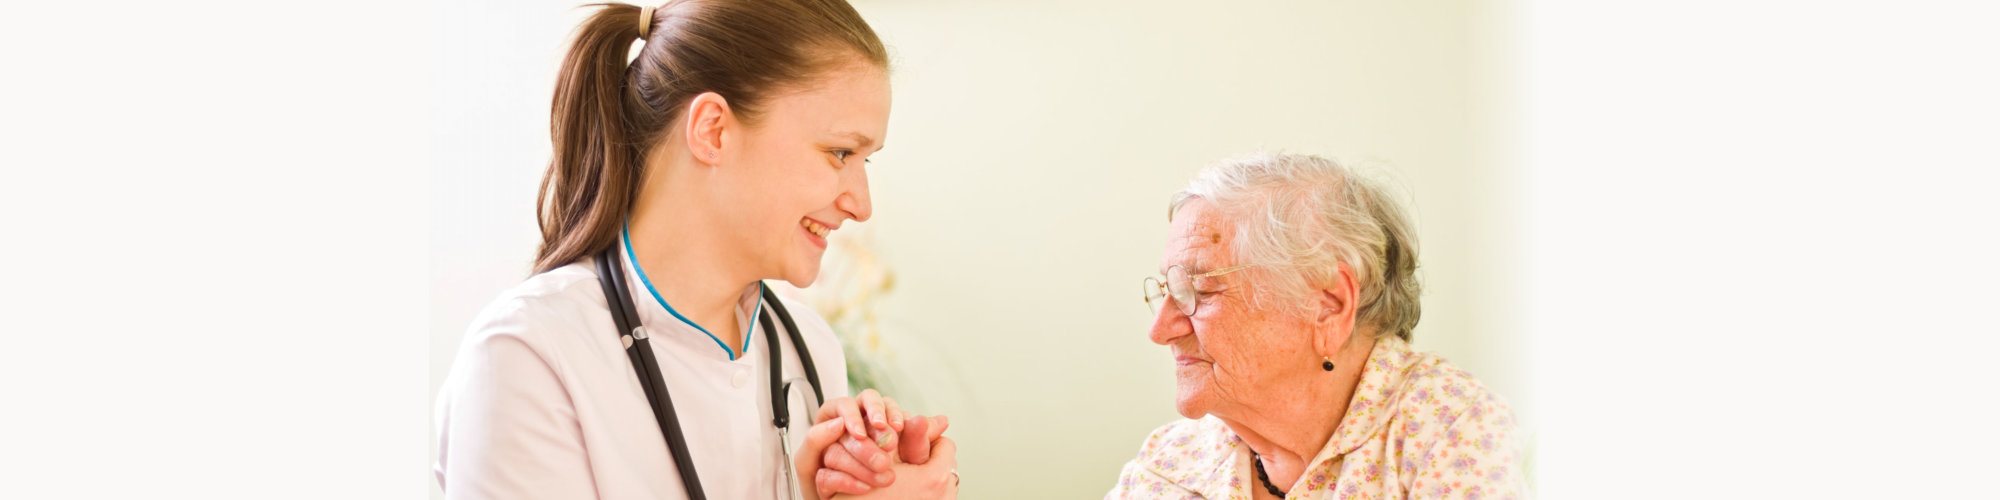 caregiver taking care her elderly